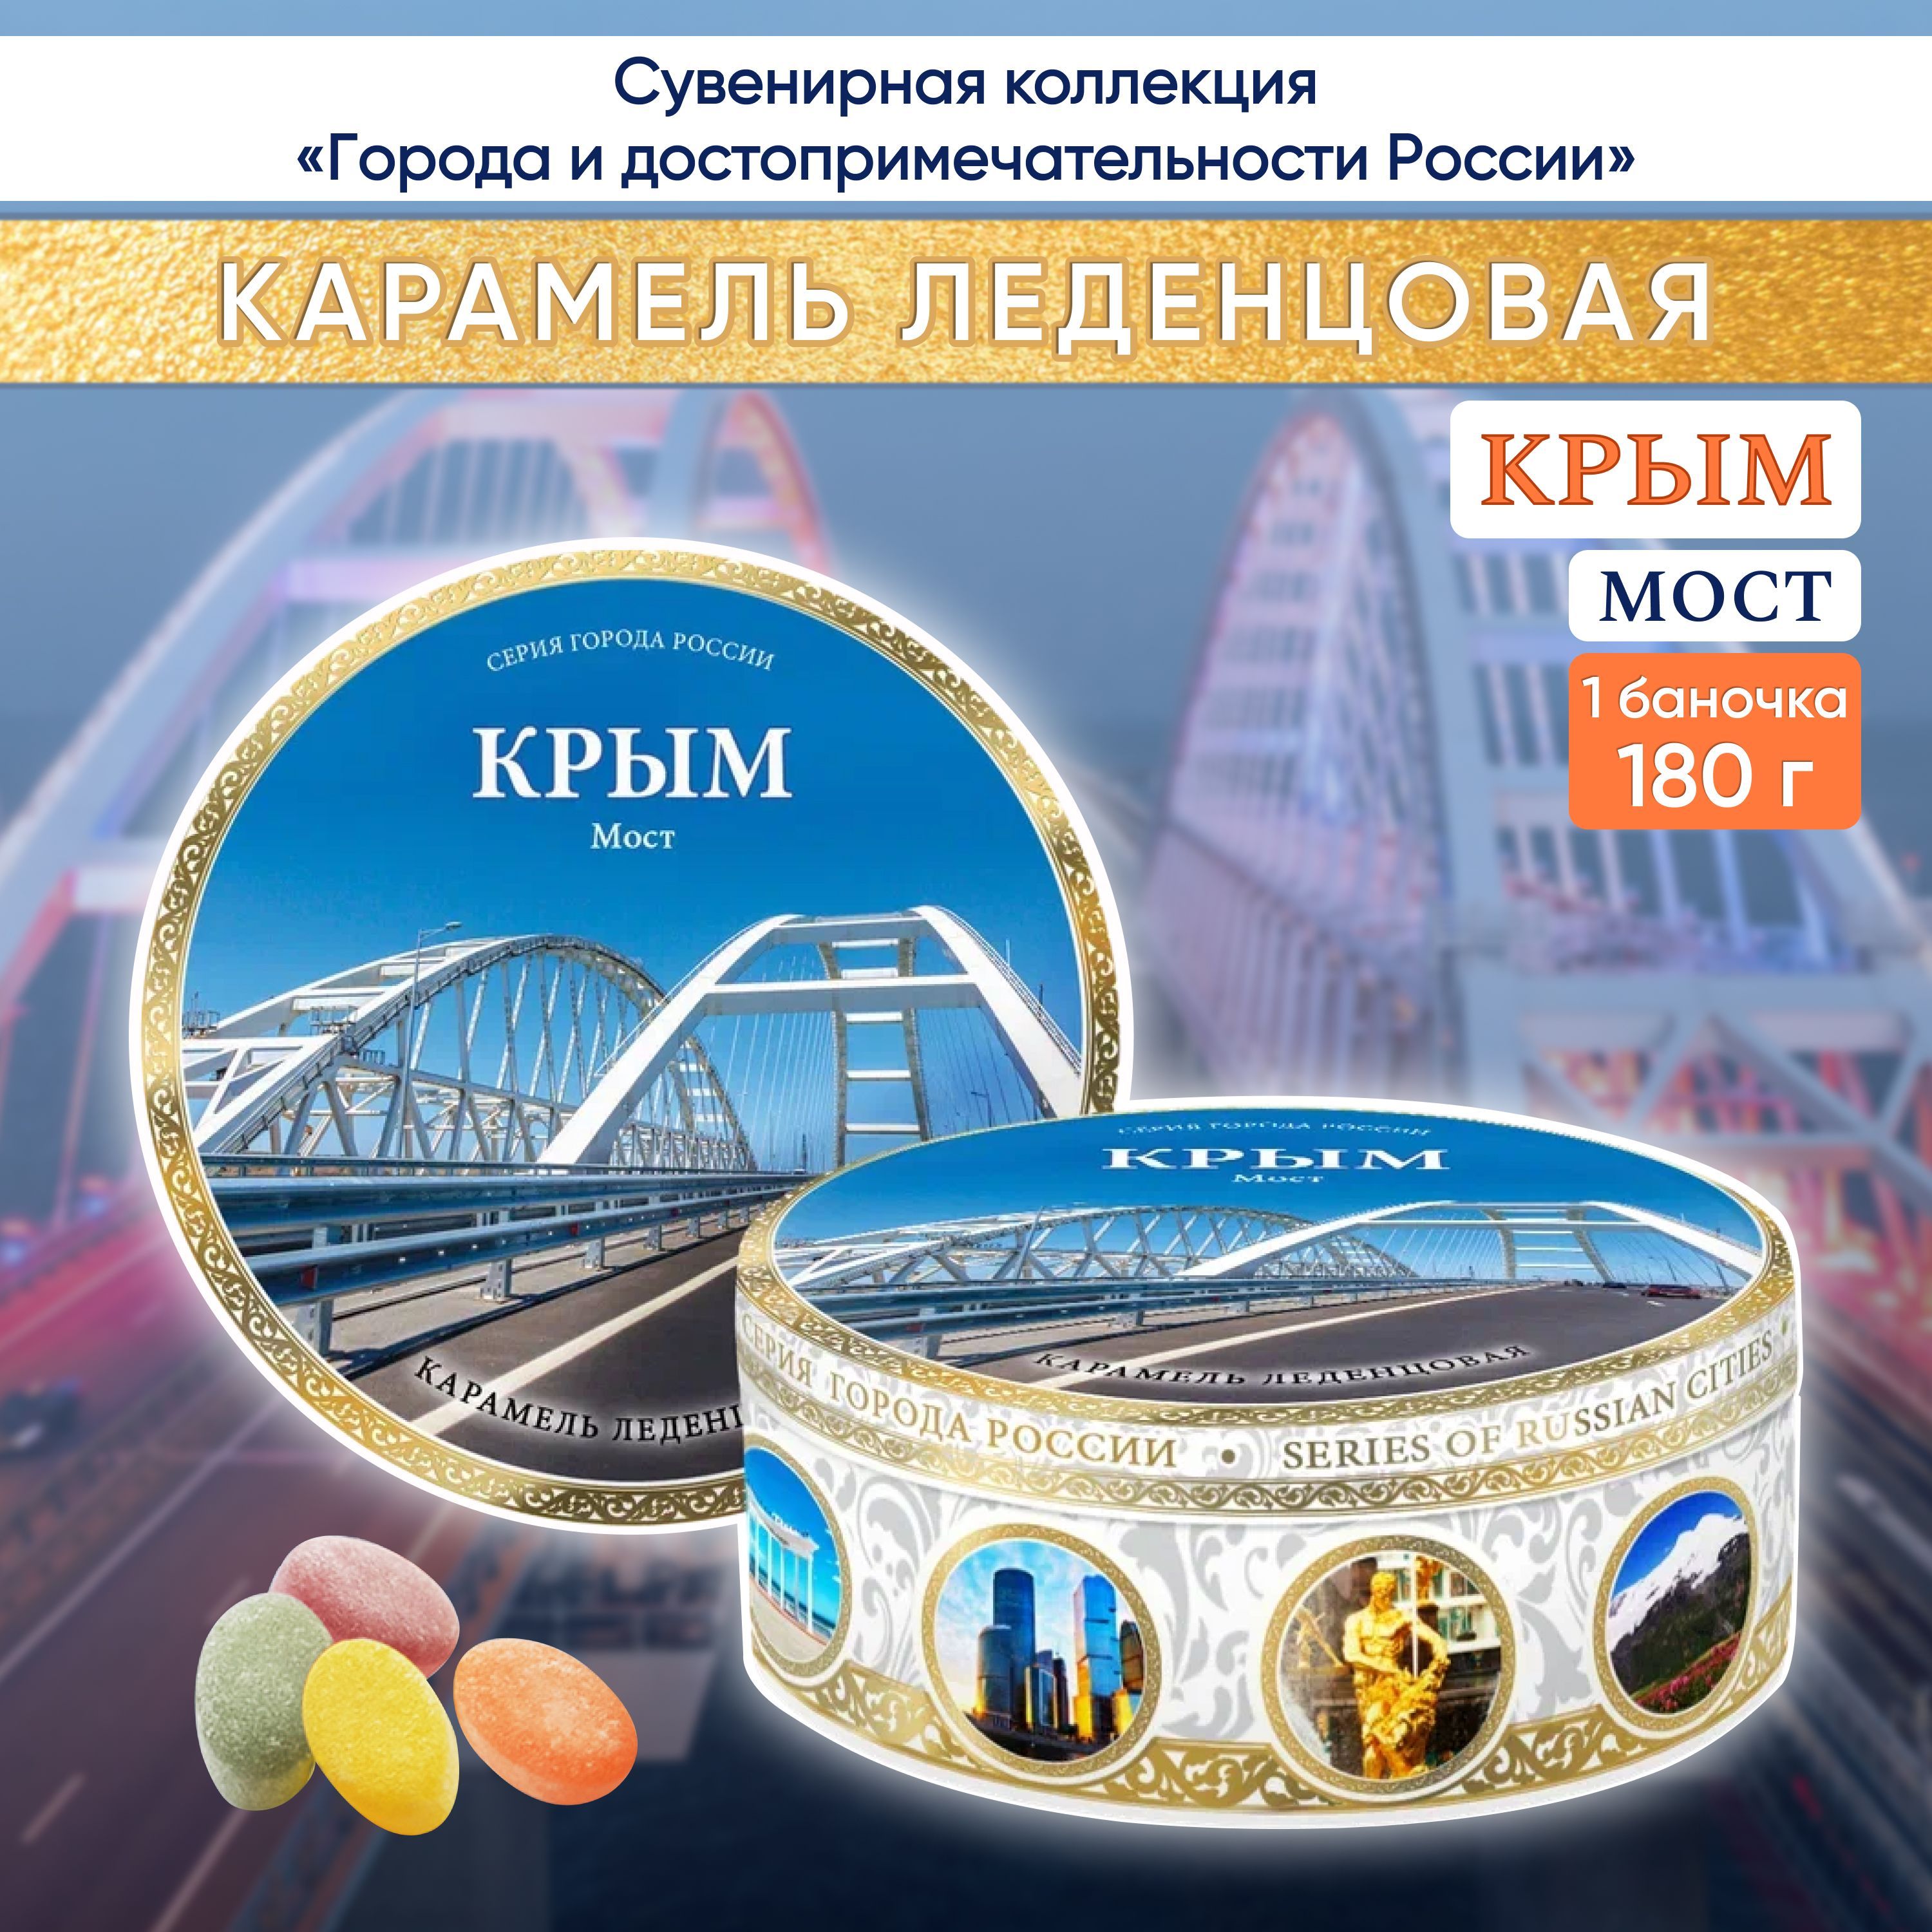 Карамель леденцовая DARLIN DAY сувенирная Крым Мост 2, 180 г